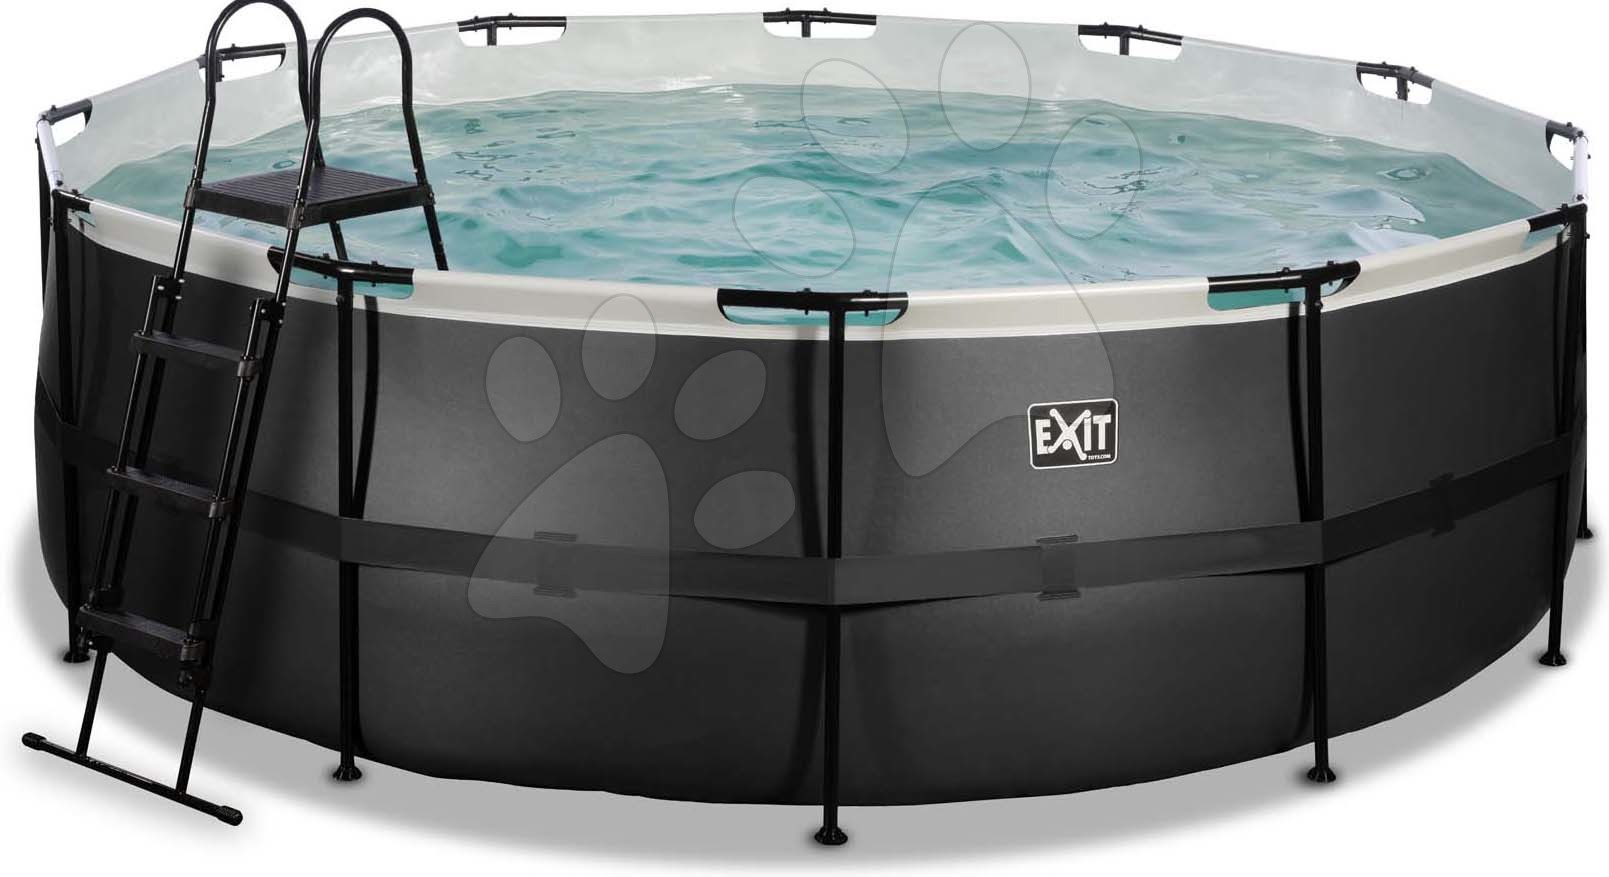 Medence homokszűrős vízforgatóval Black Leather pool Exit Toys kerek acél medencekeret 427*122 cm fekete 6 évtől